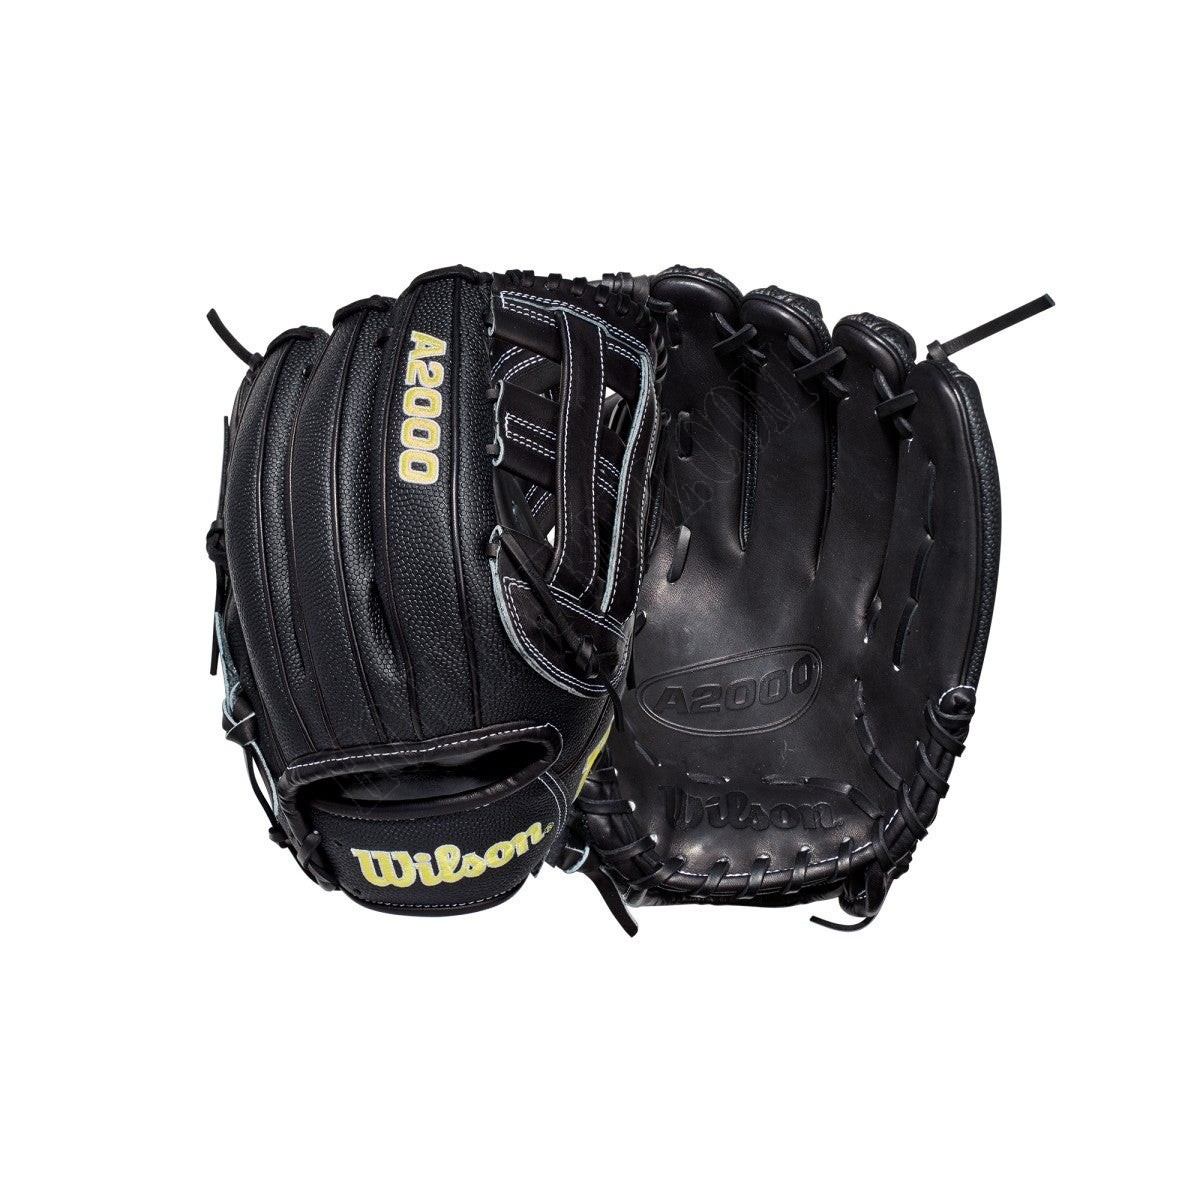 2021 A2000 DW5SS 12" Infield Baseball Glove ● Wilson Promotions - 2021 A2000 DW5SS 12" Infield Baseball Glove ● Wilson Promotions